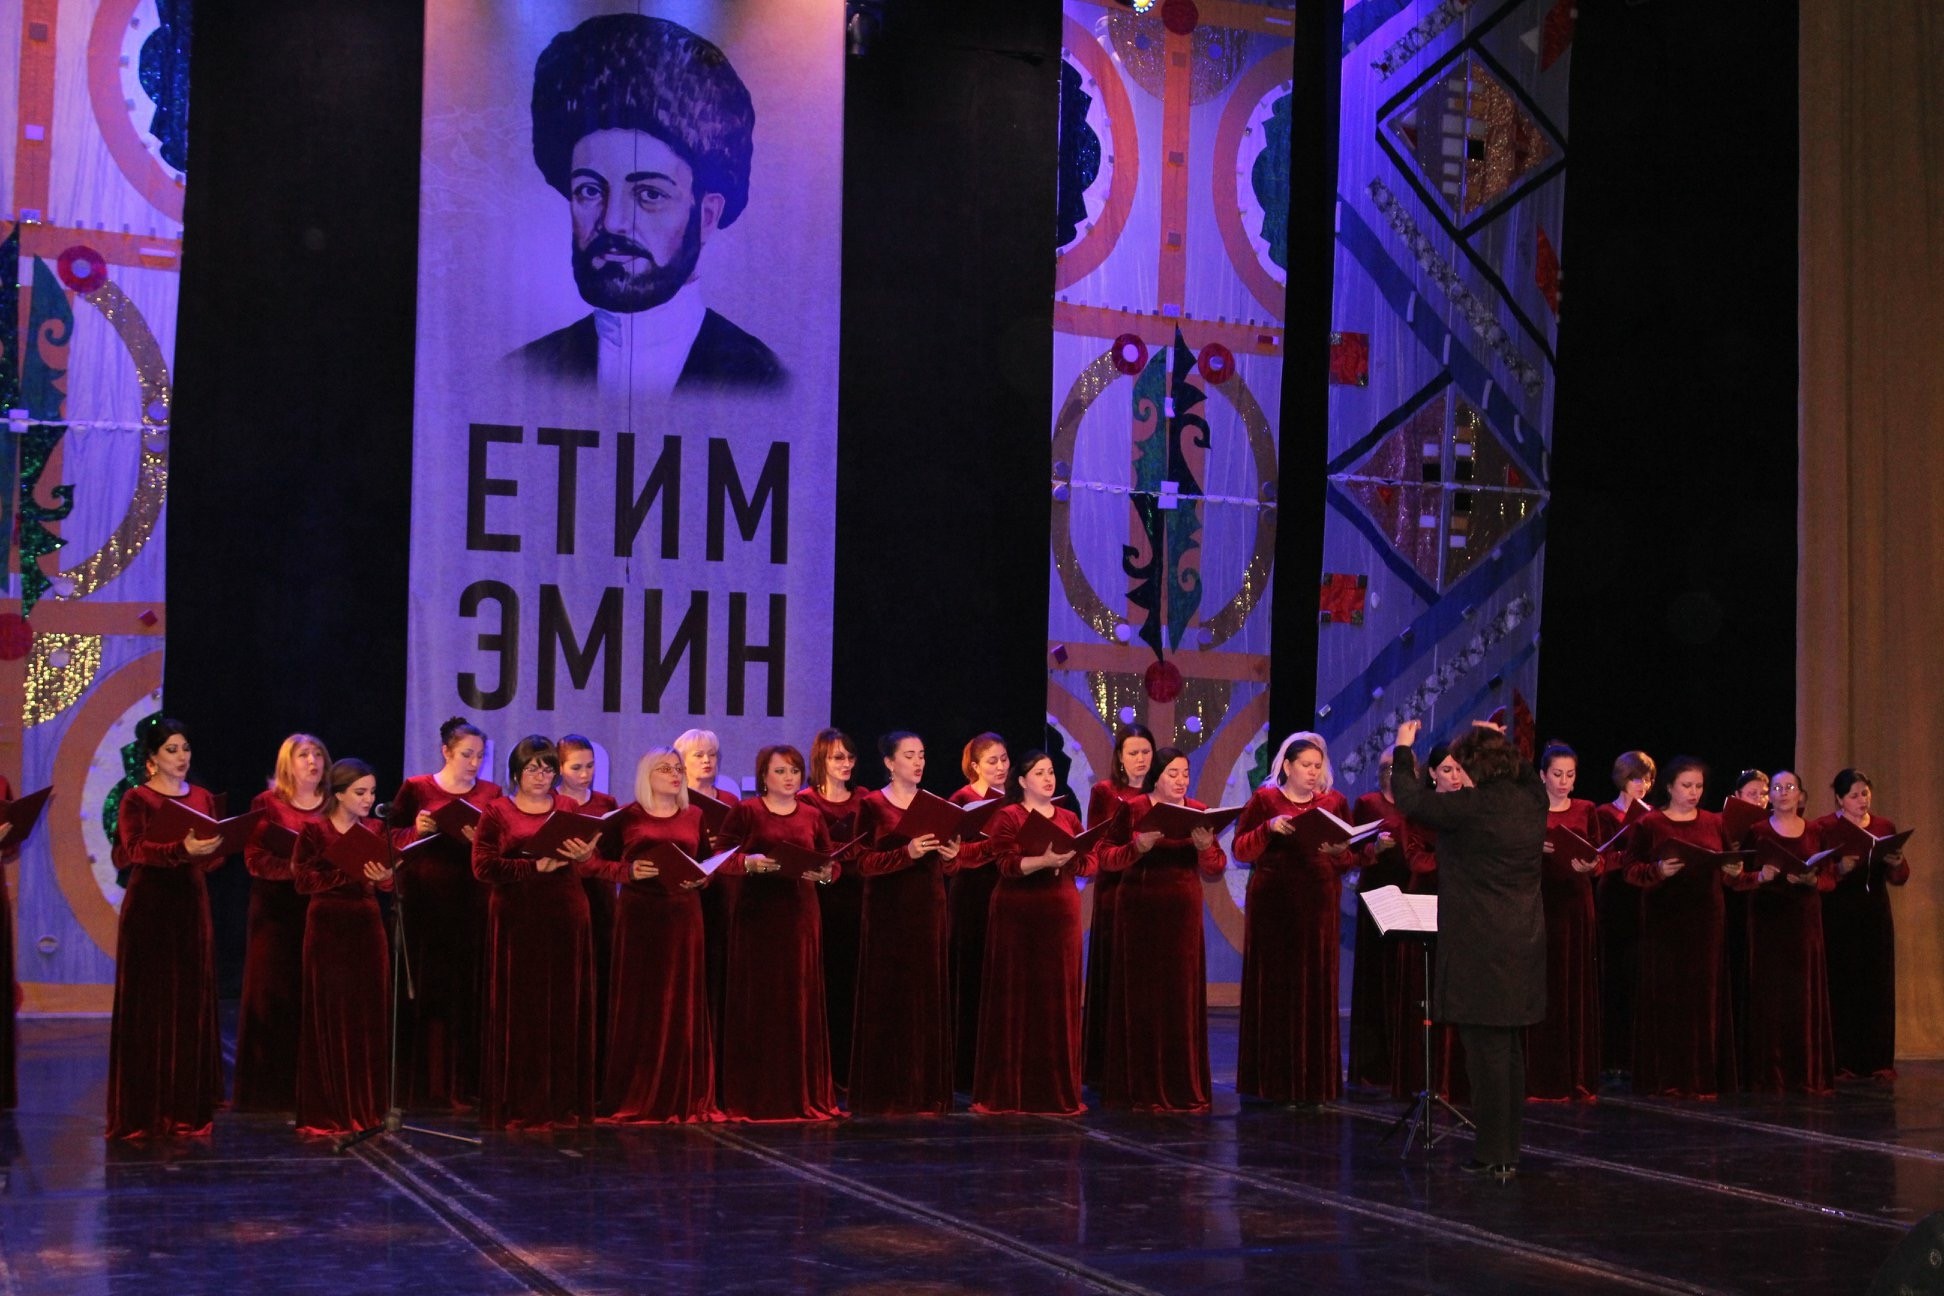 Концерт, посвящённый 180-летию со дня рождения классика дагестанской литературы Етима Эмина.